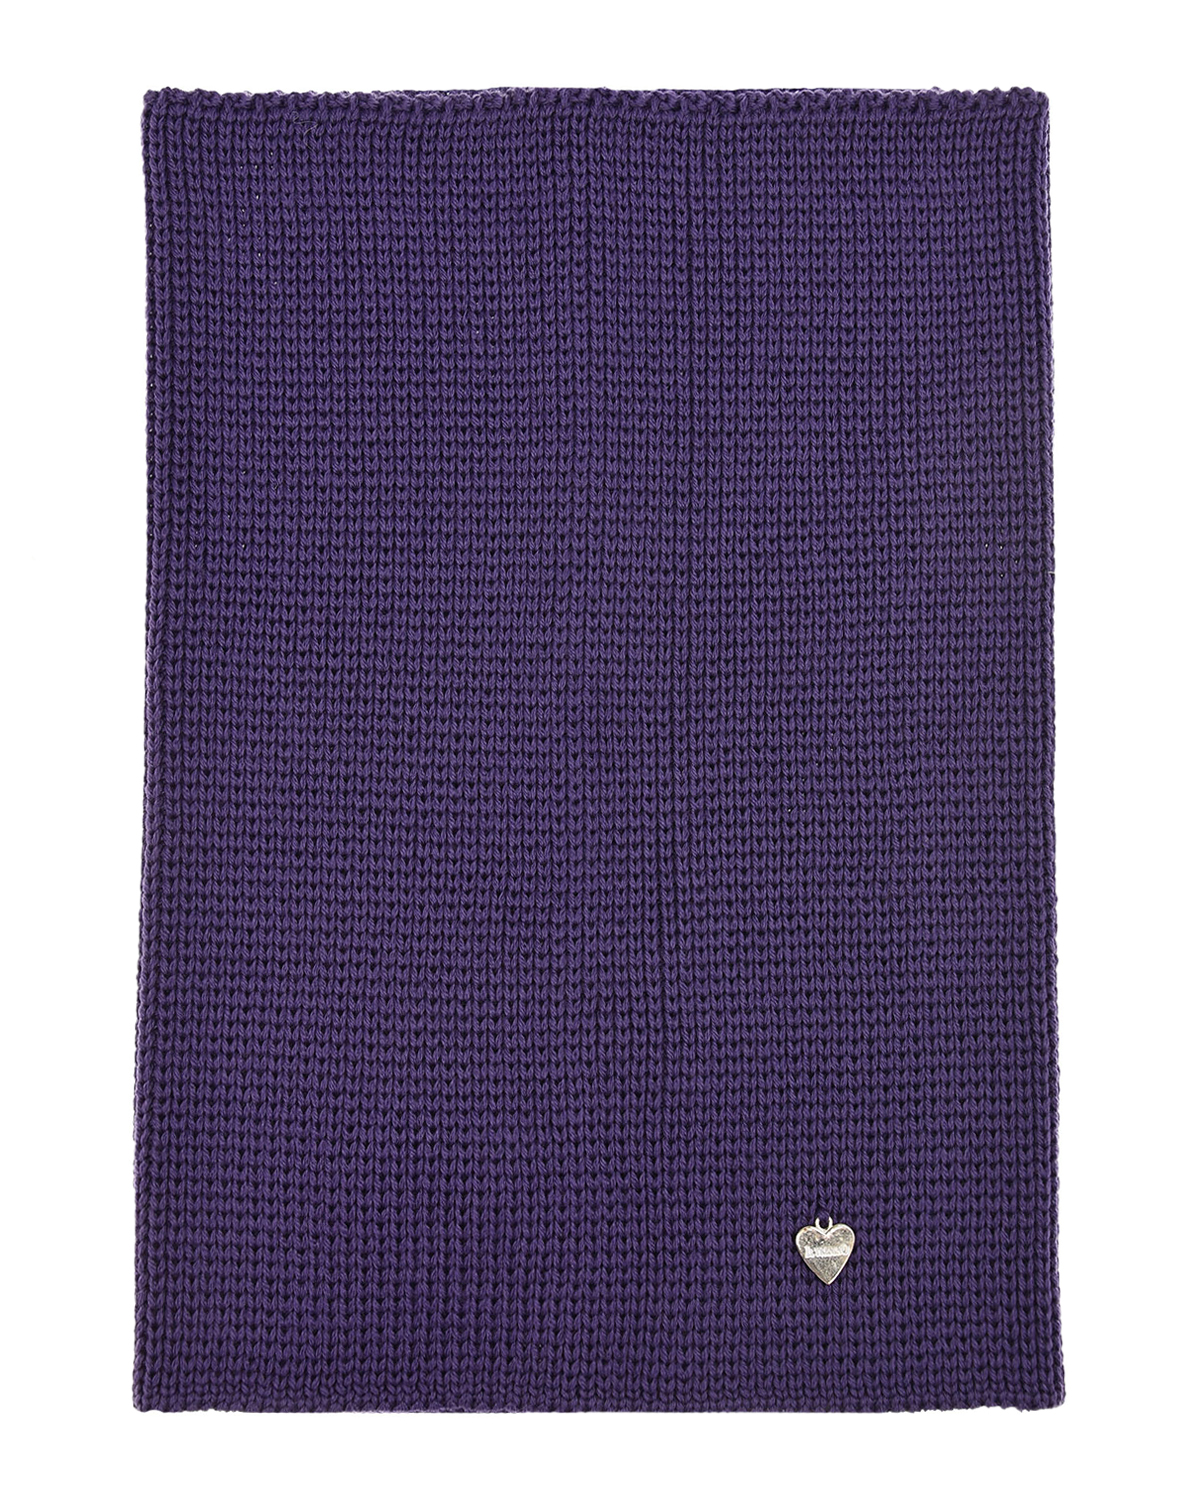 Синий шарф-ворот Il Trenino детский, размер unica, цвет фиолетовый